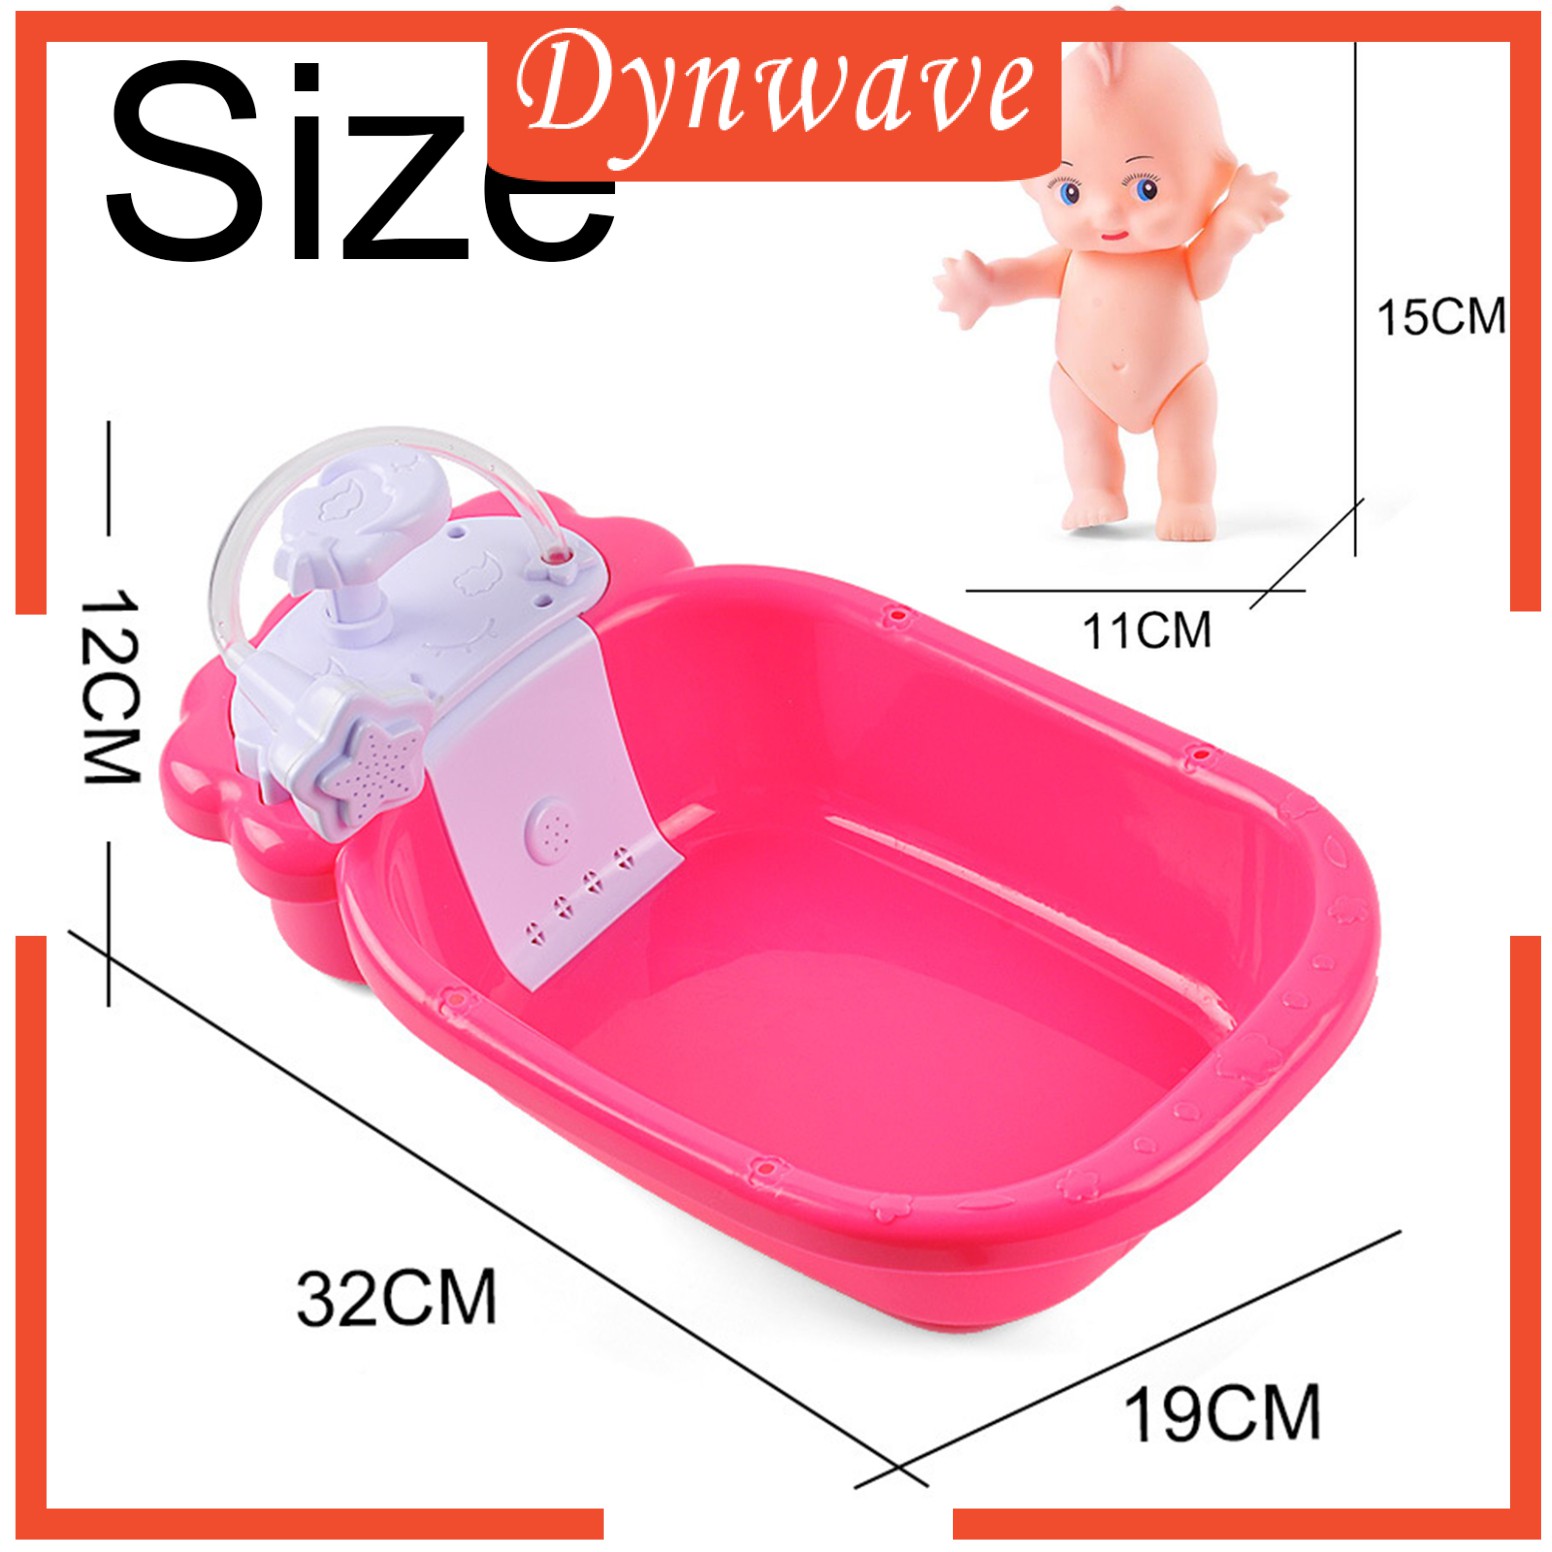 [DYNWAVE] Doll Bath Play Tub with Shower Pretend Play Infant Baby Kids Doll Toy Bathtub